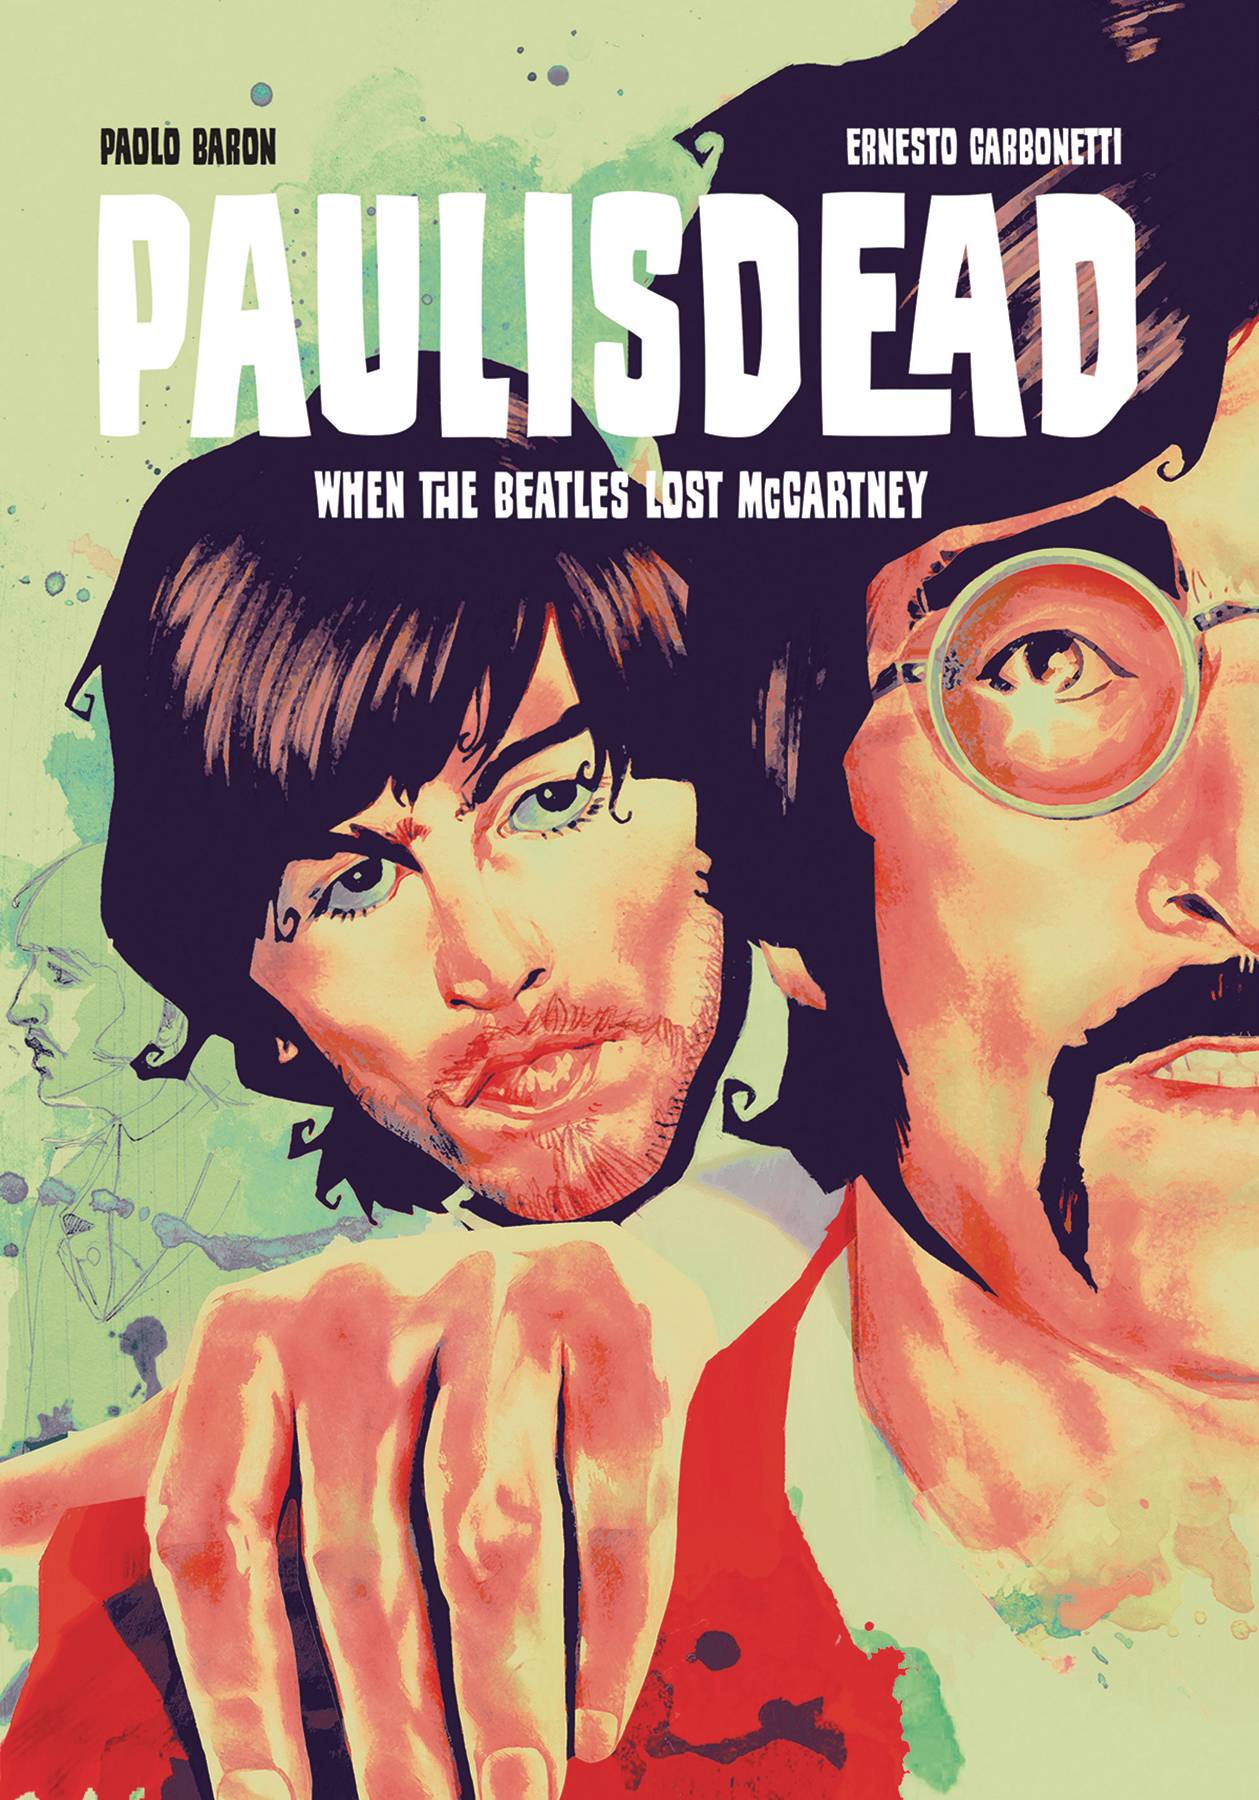 Paul is Dead: When the Beatles Lost McCartney